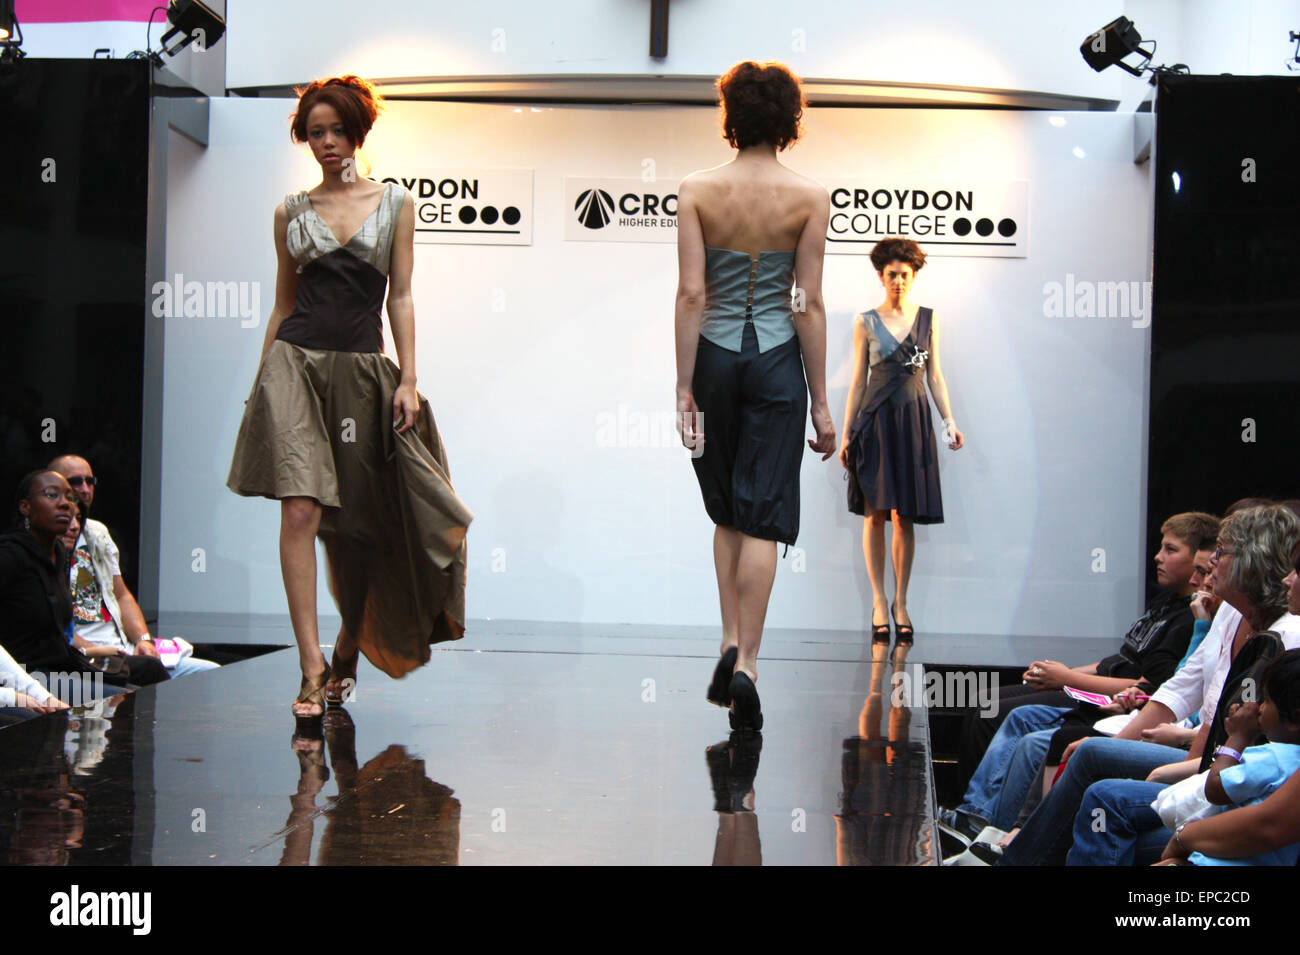 CROYDON, LONDON - 18 giugno : i modelli in Festival di moda su Giugno 18, 2008 a Whitgift Shopping Centre, Croydon, Inghilterra Foto Stock